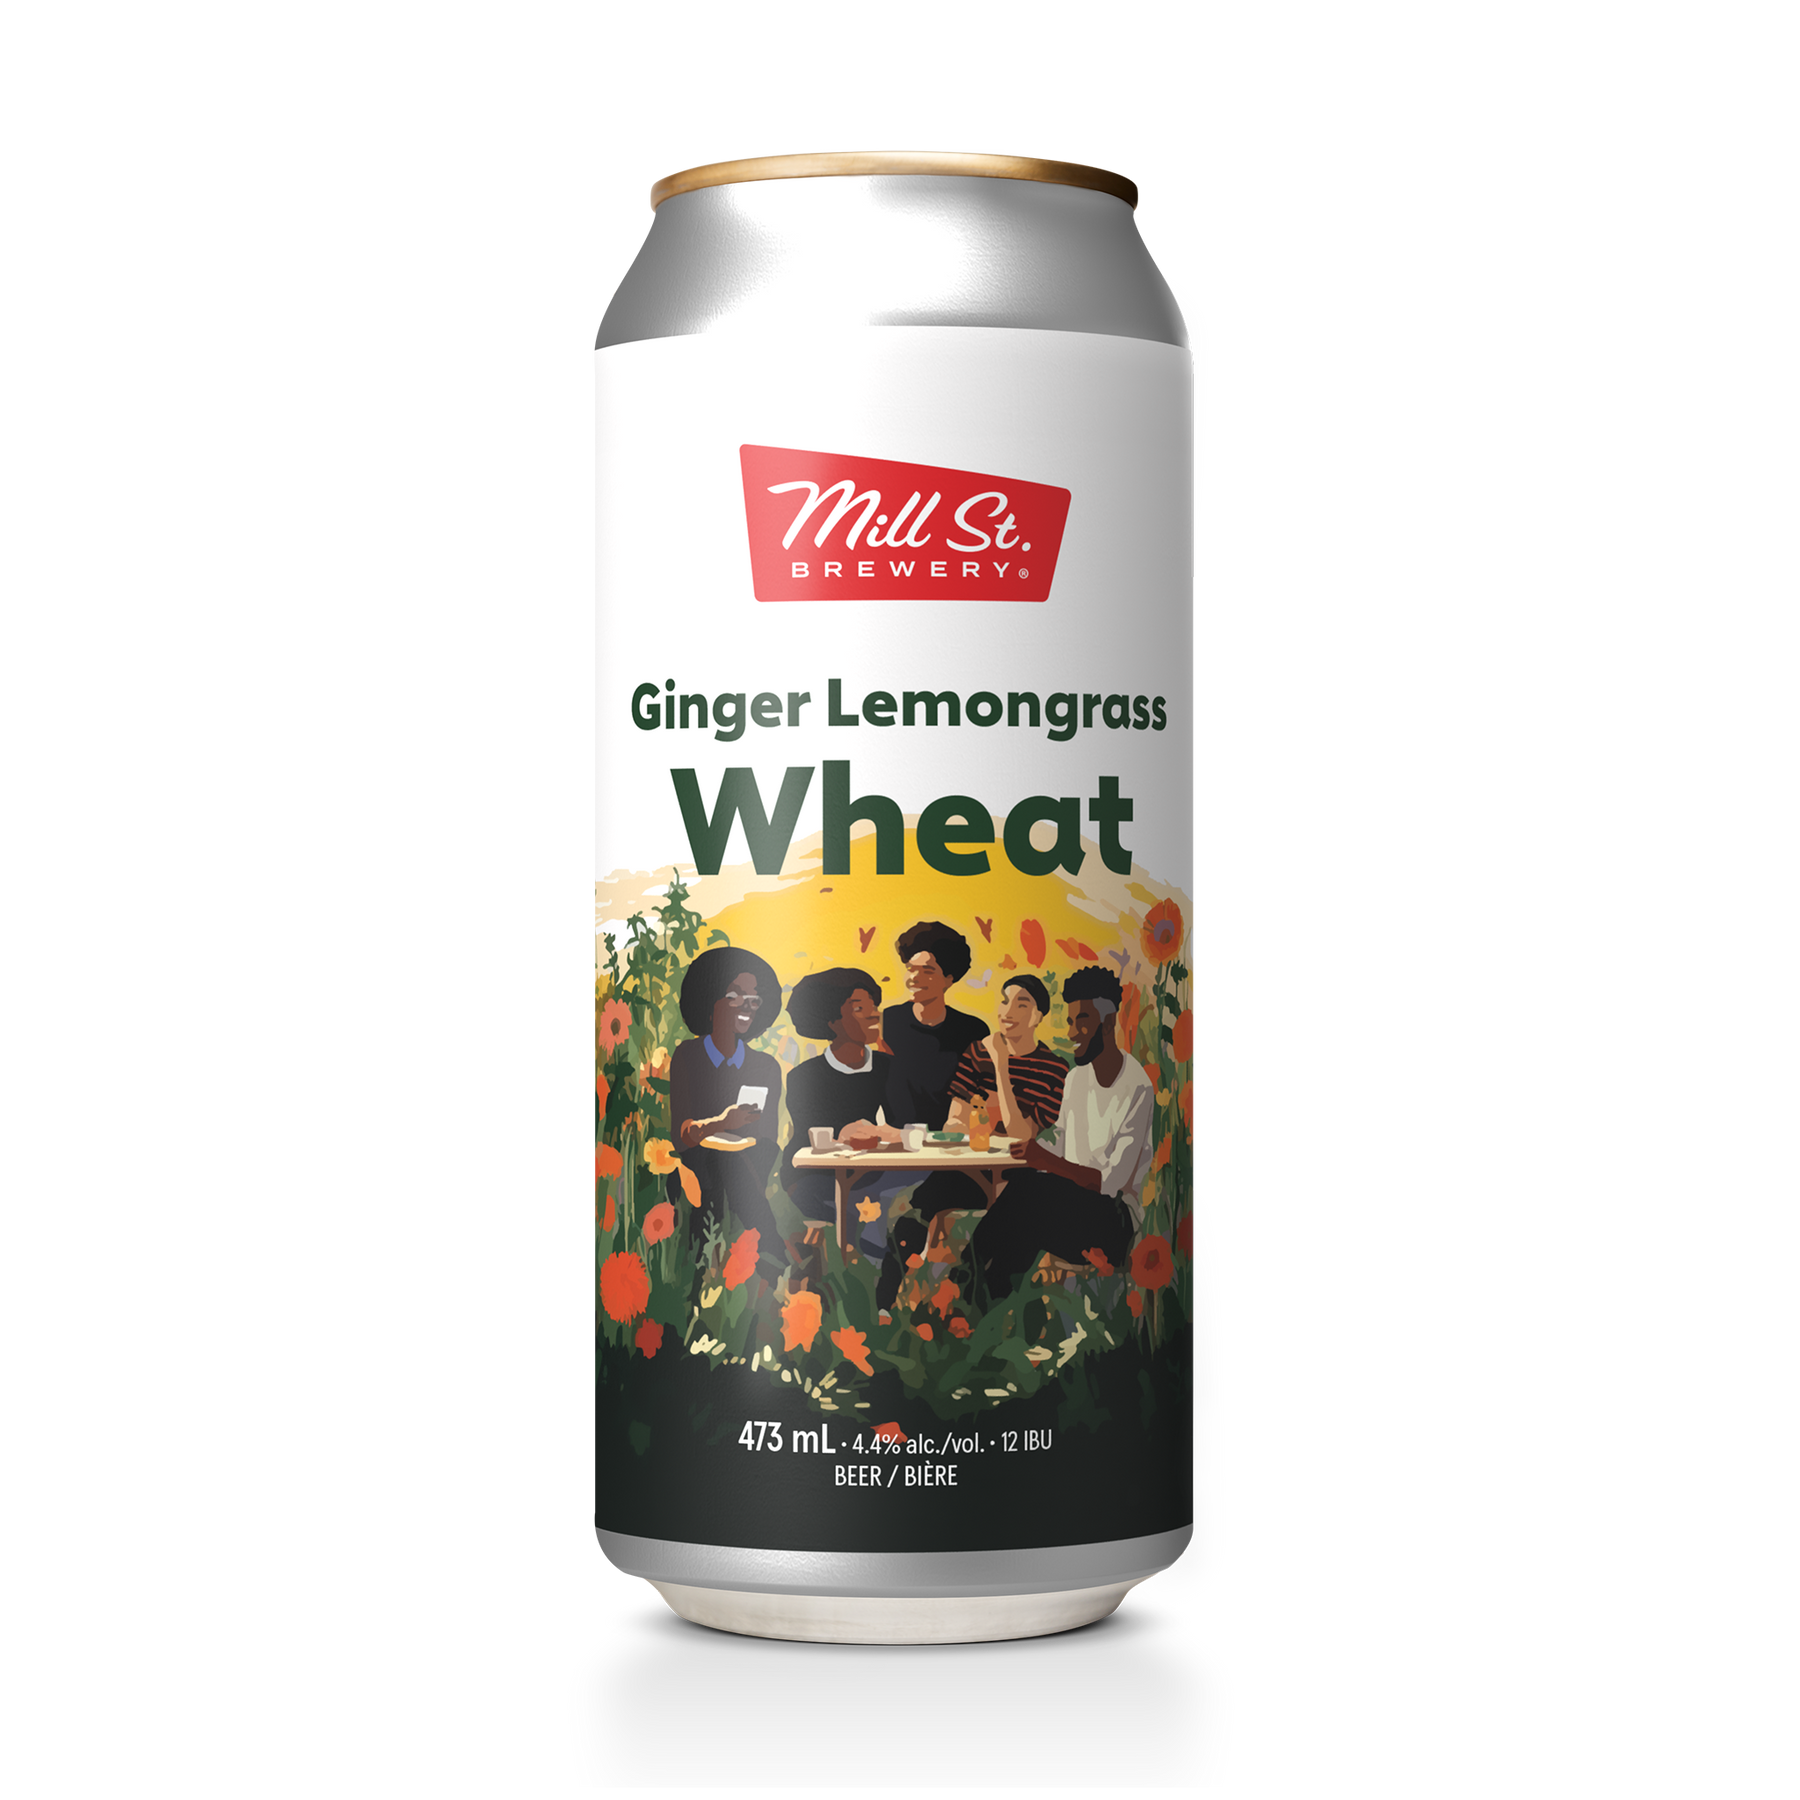 Ginger Lemongrass Wheat